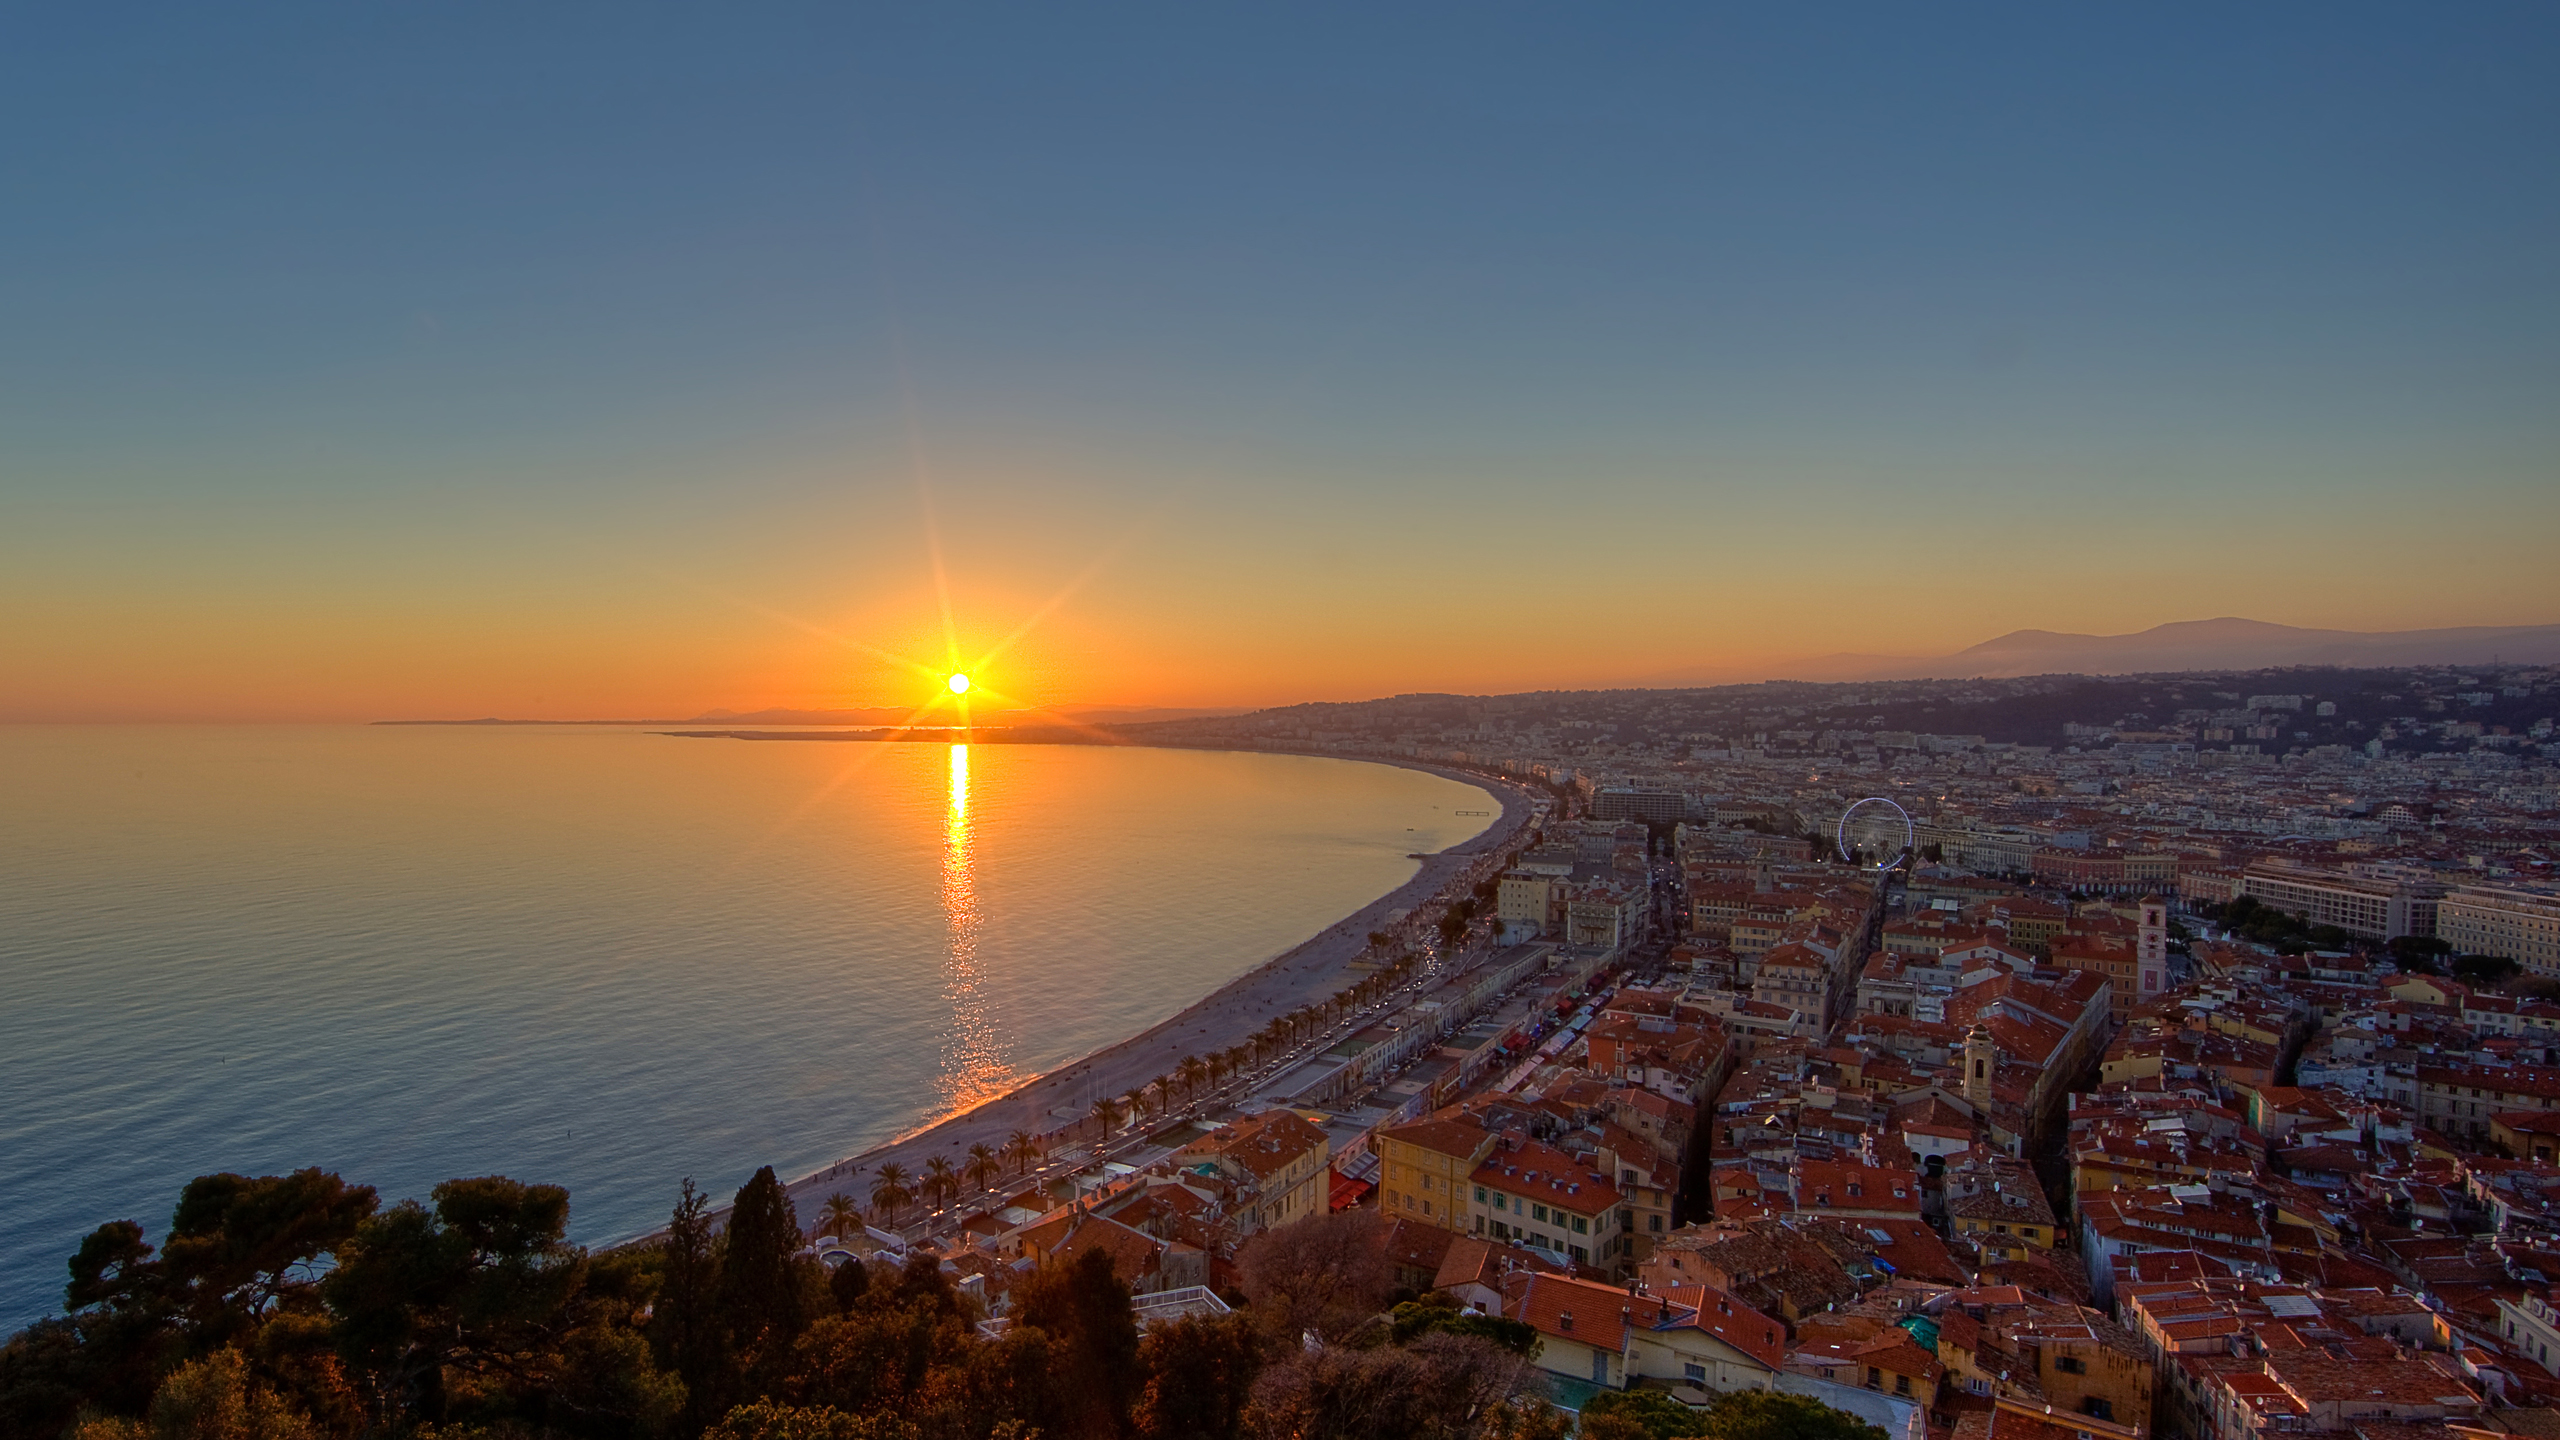 Côte d'Azur sunset over France